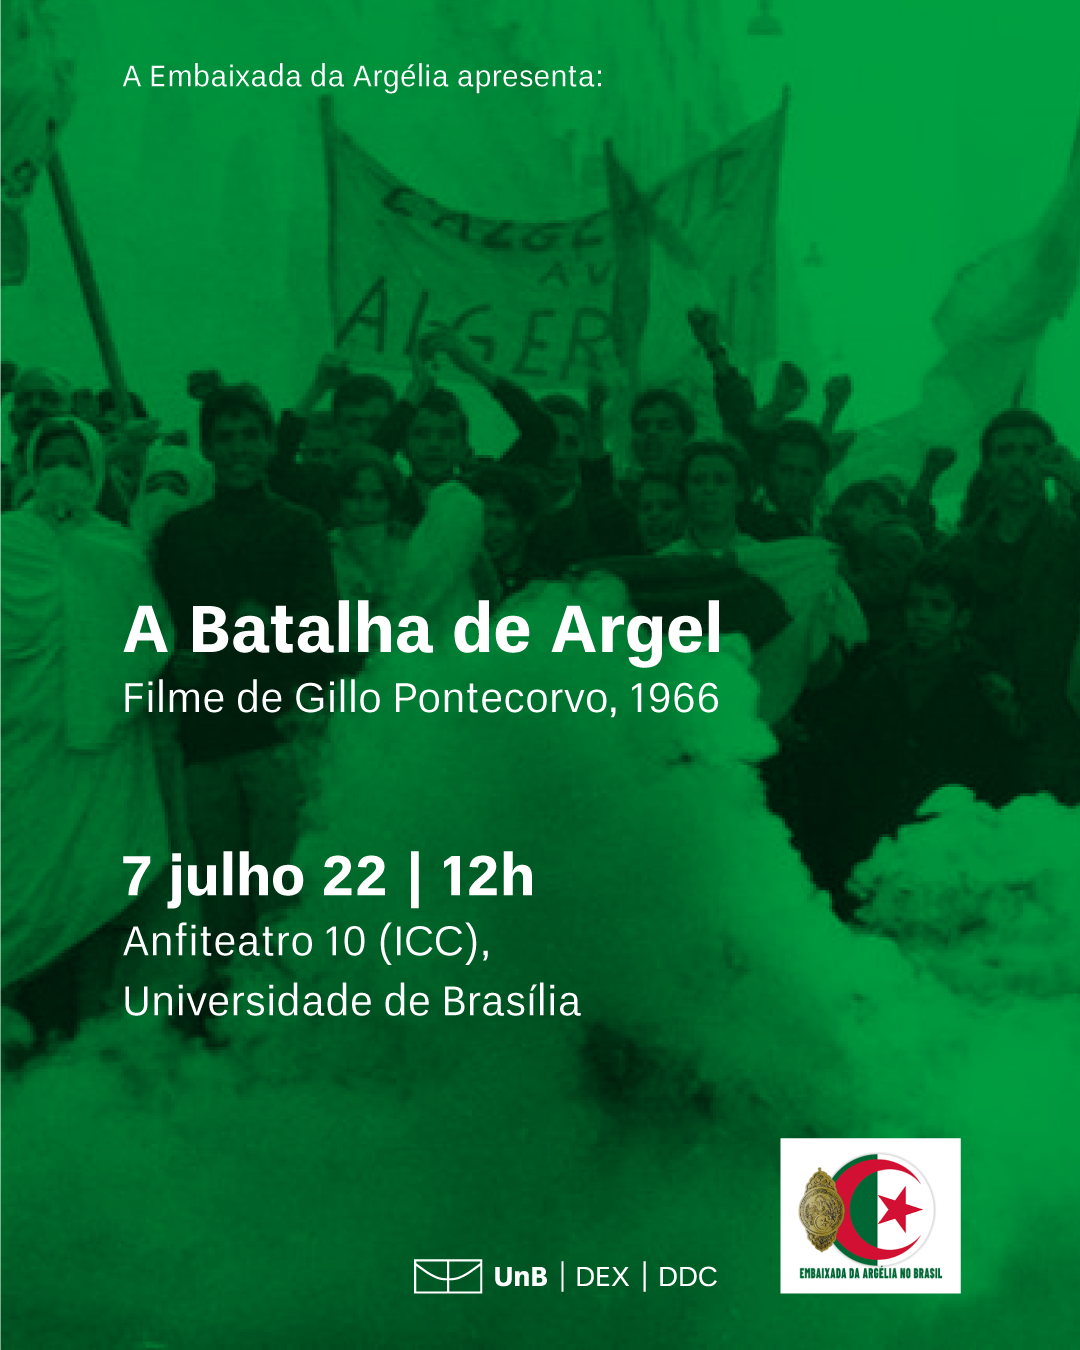 Filme "A Batalha de Argel" - Embaixada da Argélia